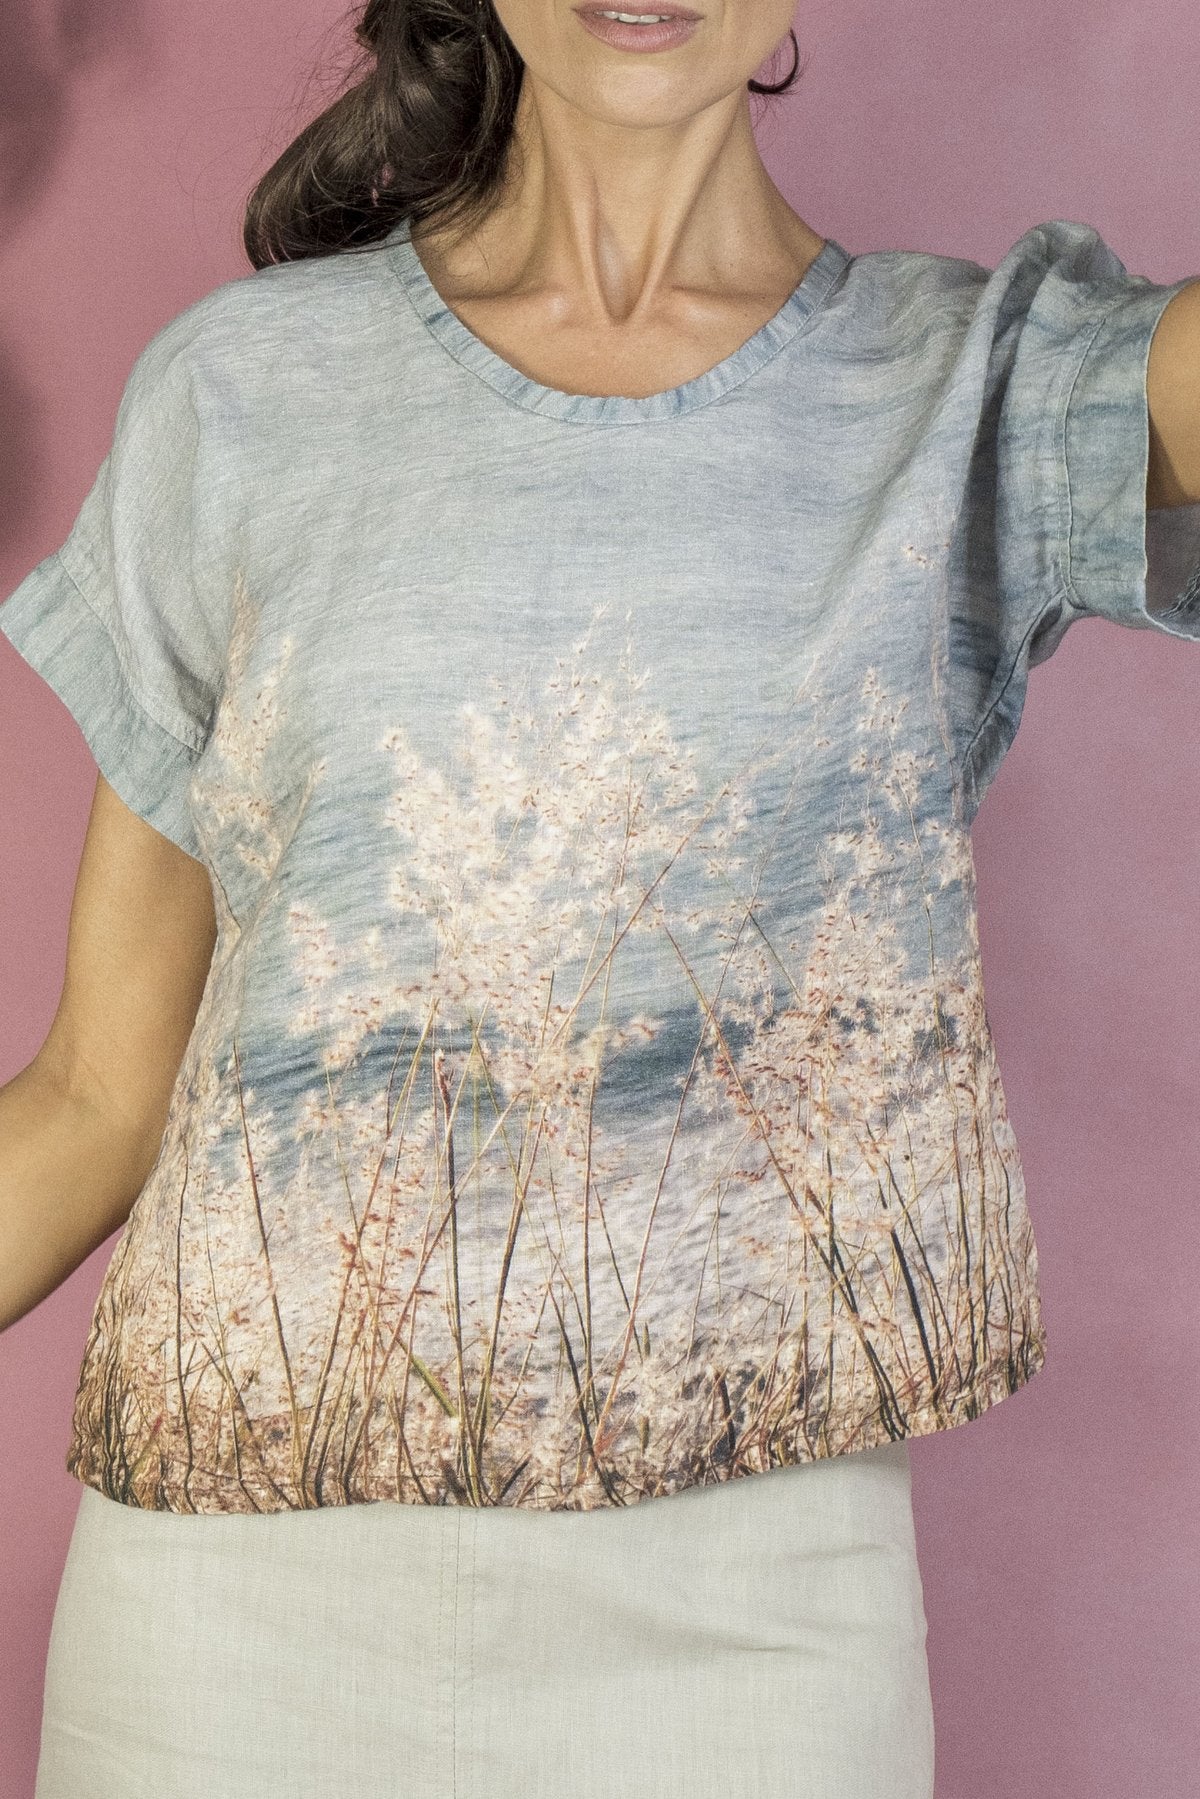 Harriet Jane Crimped Linen Tee Shirt Blouse Top Luxury Australian Made Ocean Grass Tantrika